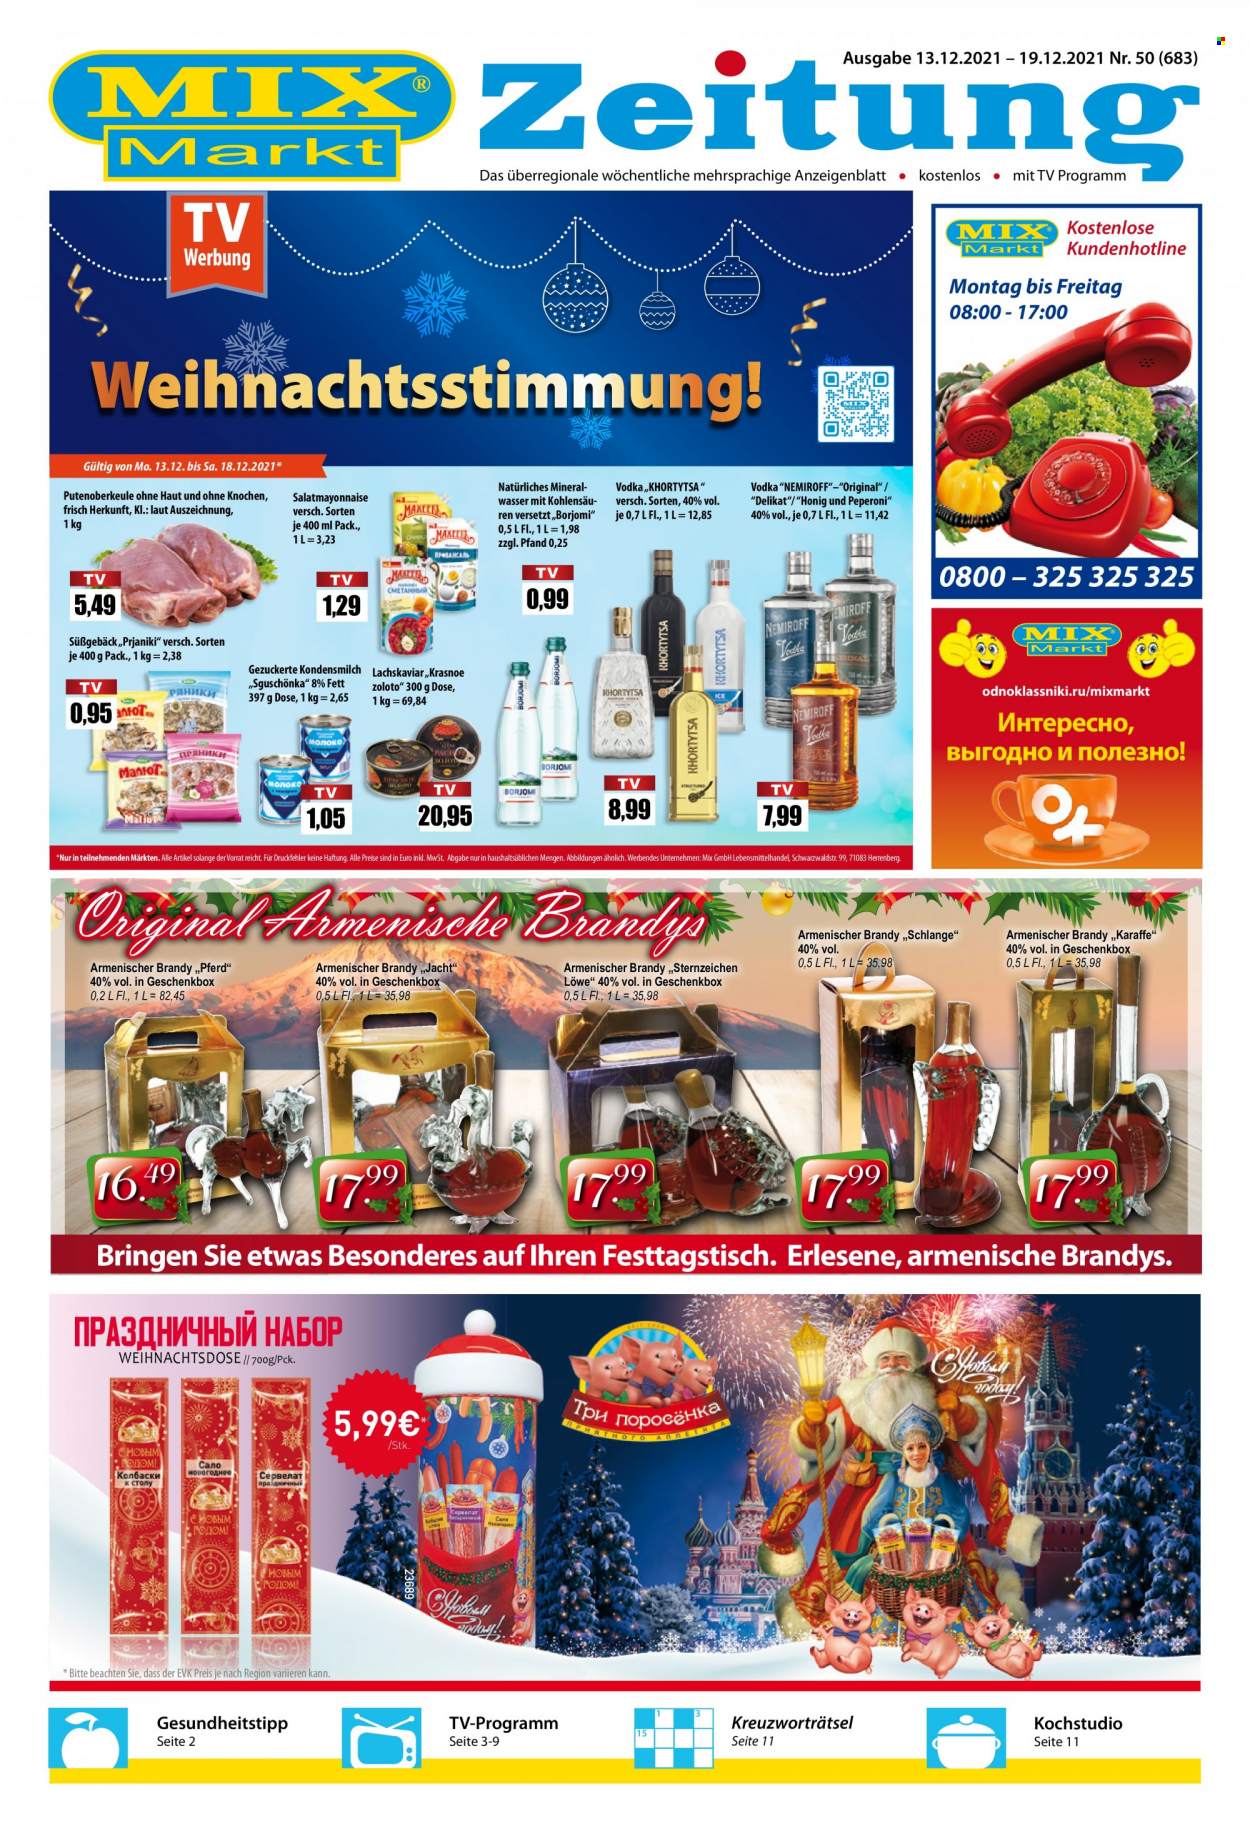 thumbnail - Prospekte Mix Markt - 13.12.2021 - 19.12.2021 - Produkte in Aktion - Putenoberkeule, Alkohol, Kondensmilch, Geschenkbox, Honig, Mineralwasser, Vodka, Karaffe. Seite 1.